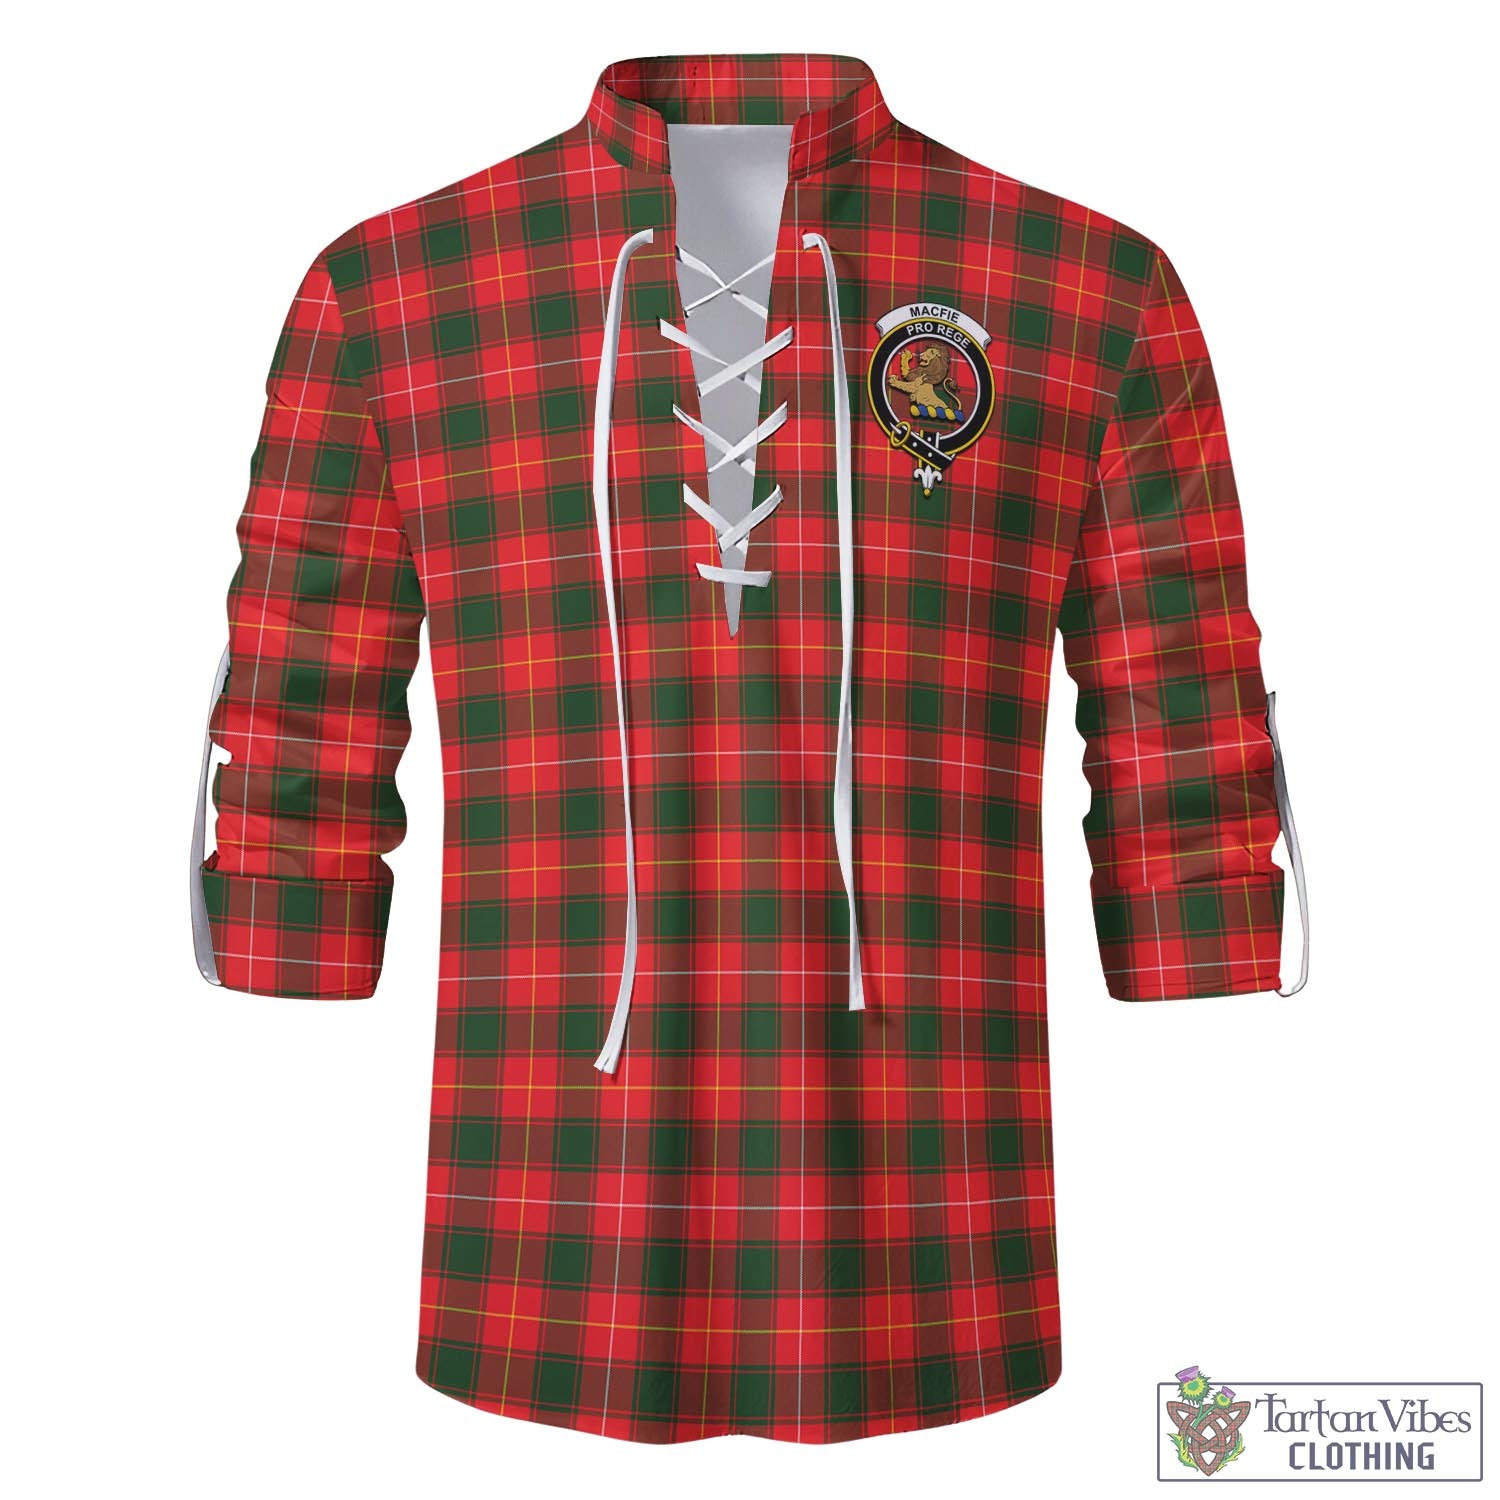 Tartan Vibes Clothing MacFie Modern Tartan Men's Scottish Traditional Jacobite Ghillie Kilt Shirt with Family Crest